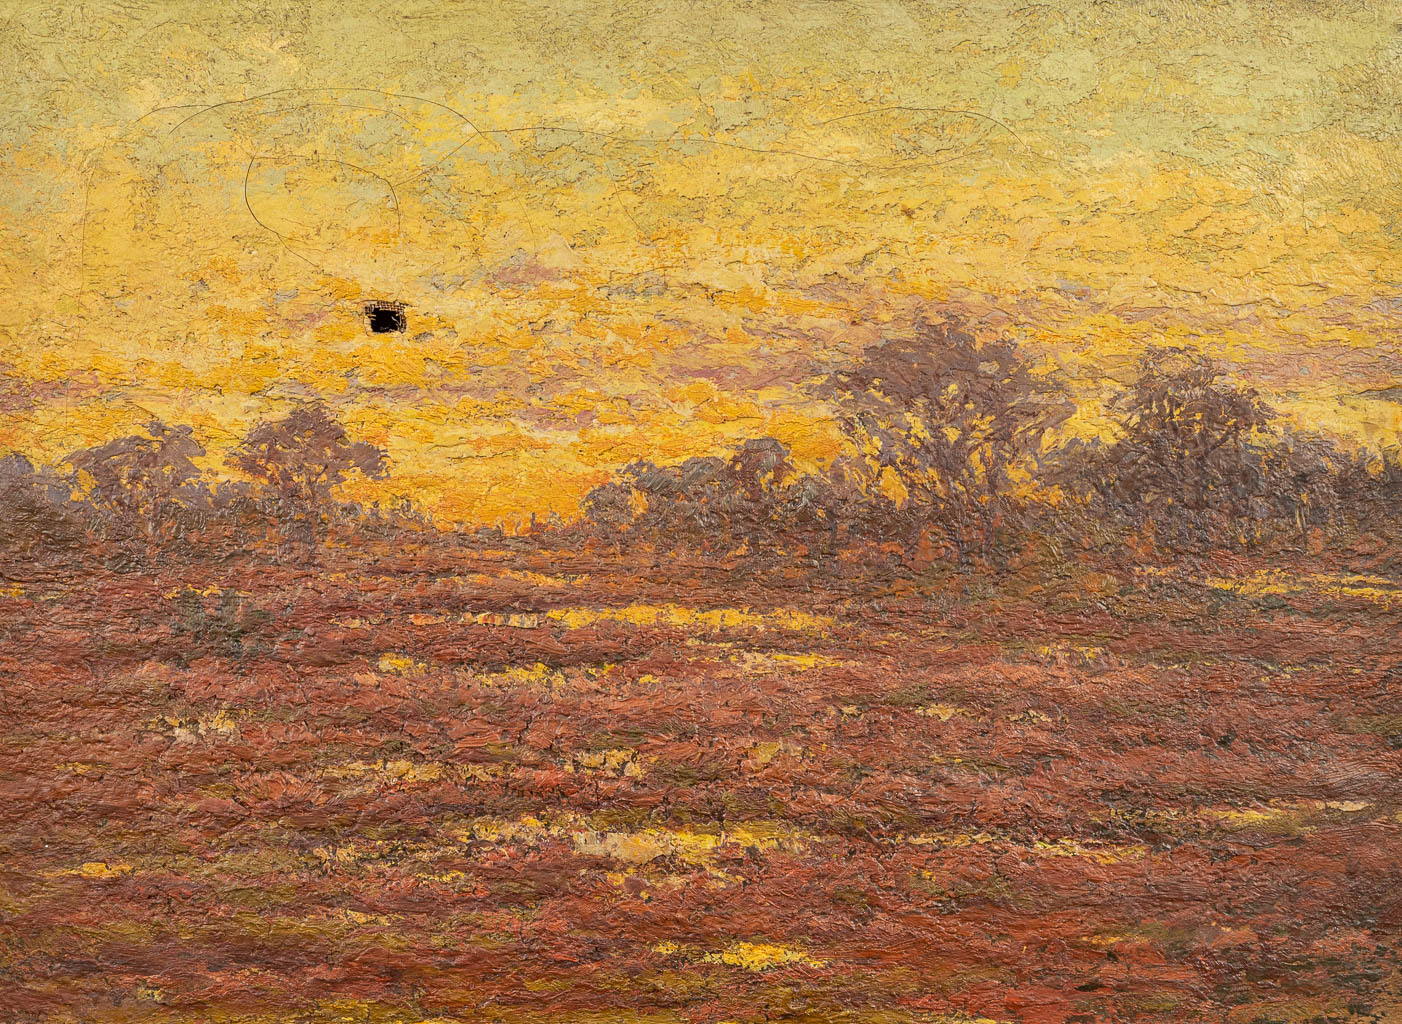 Djef ANTEN (1851-1913) 'landscape' a painting, oil on canvas. (35 x 25 cm)